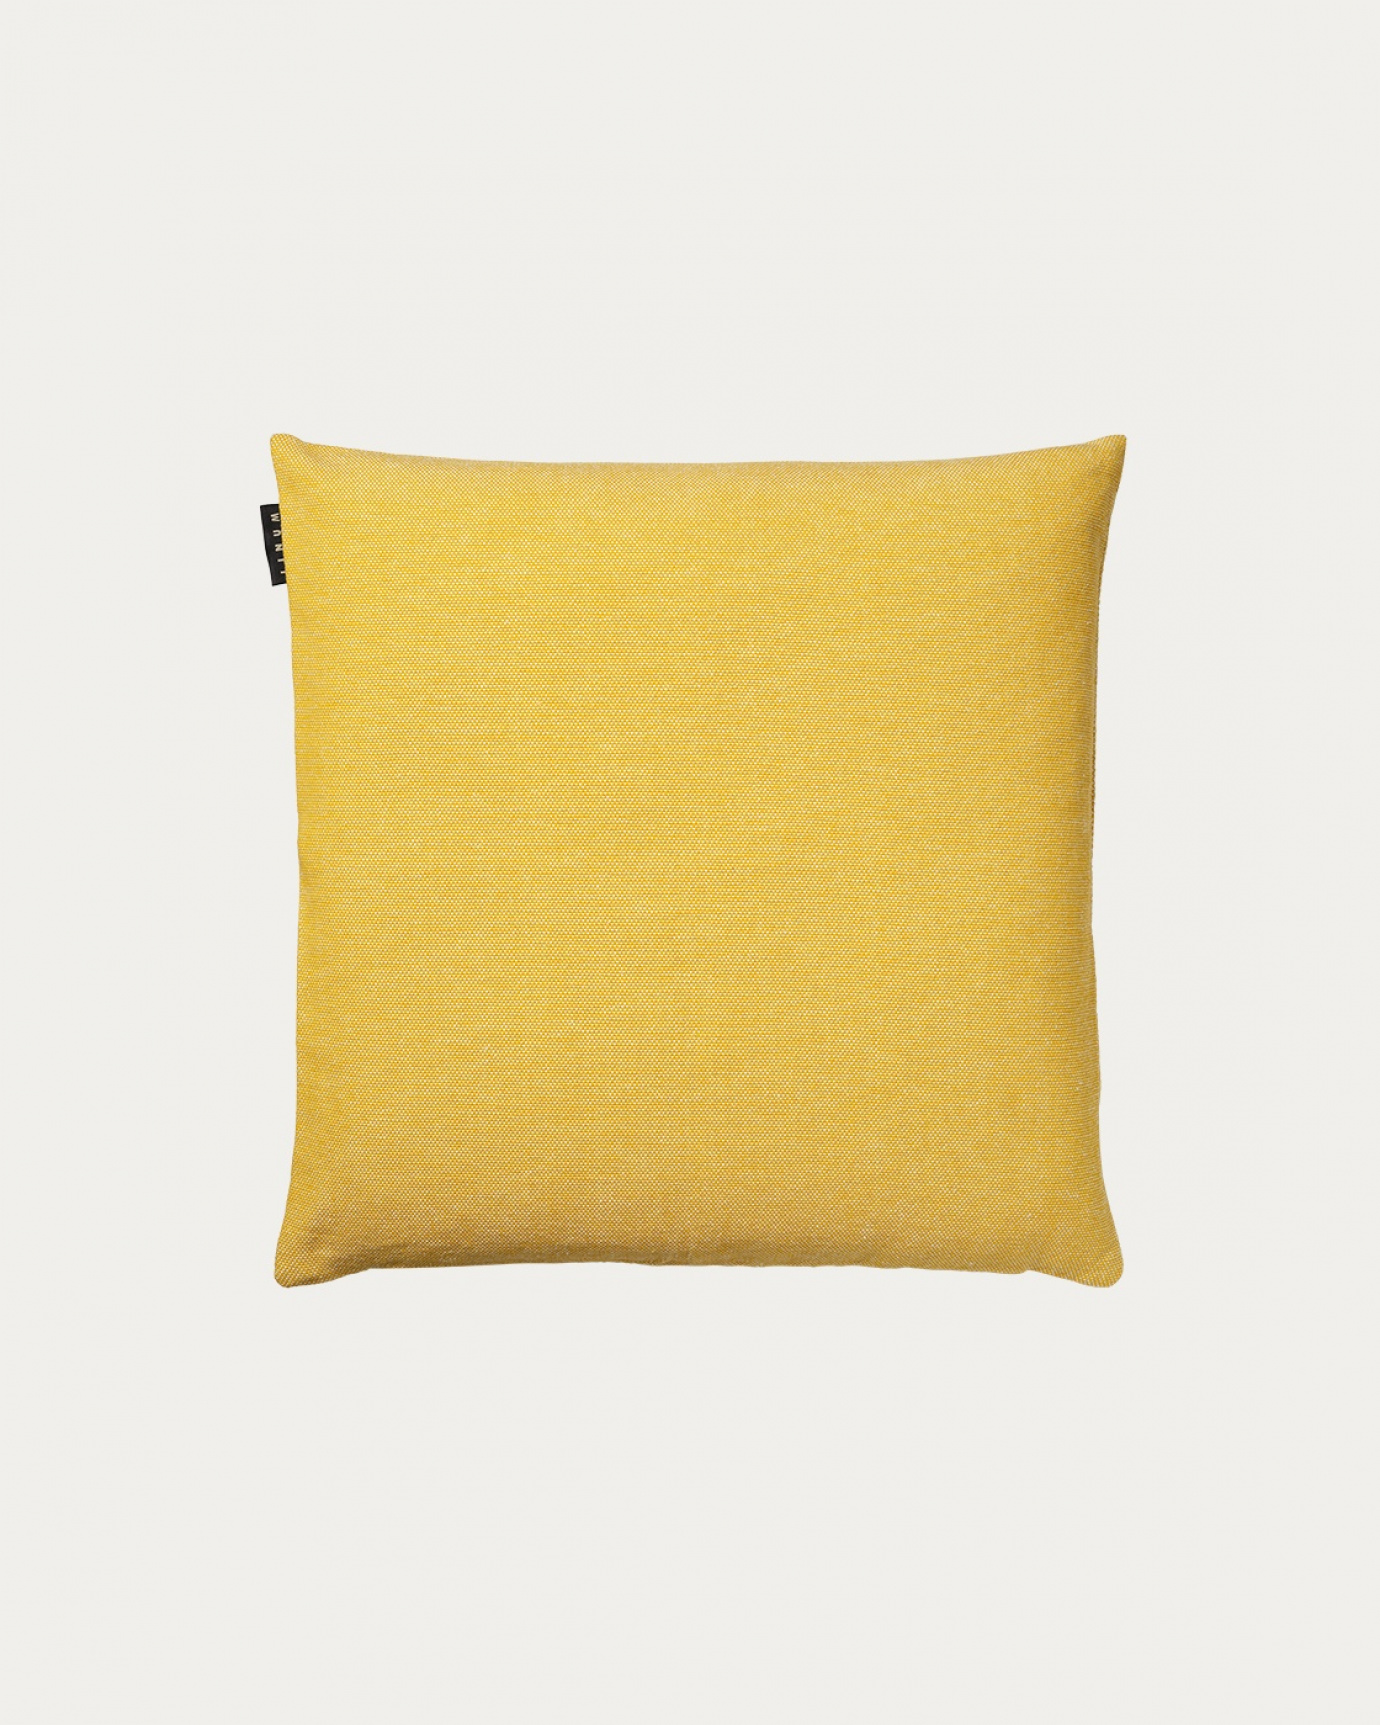 Image du produit housse de coussin PEPPER jaune moutarde en coton doux de LINUM DESIGN. Facile à laver et durable pendant des générations. Taille 40 x 40 cm.